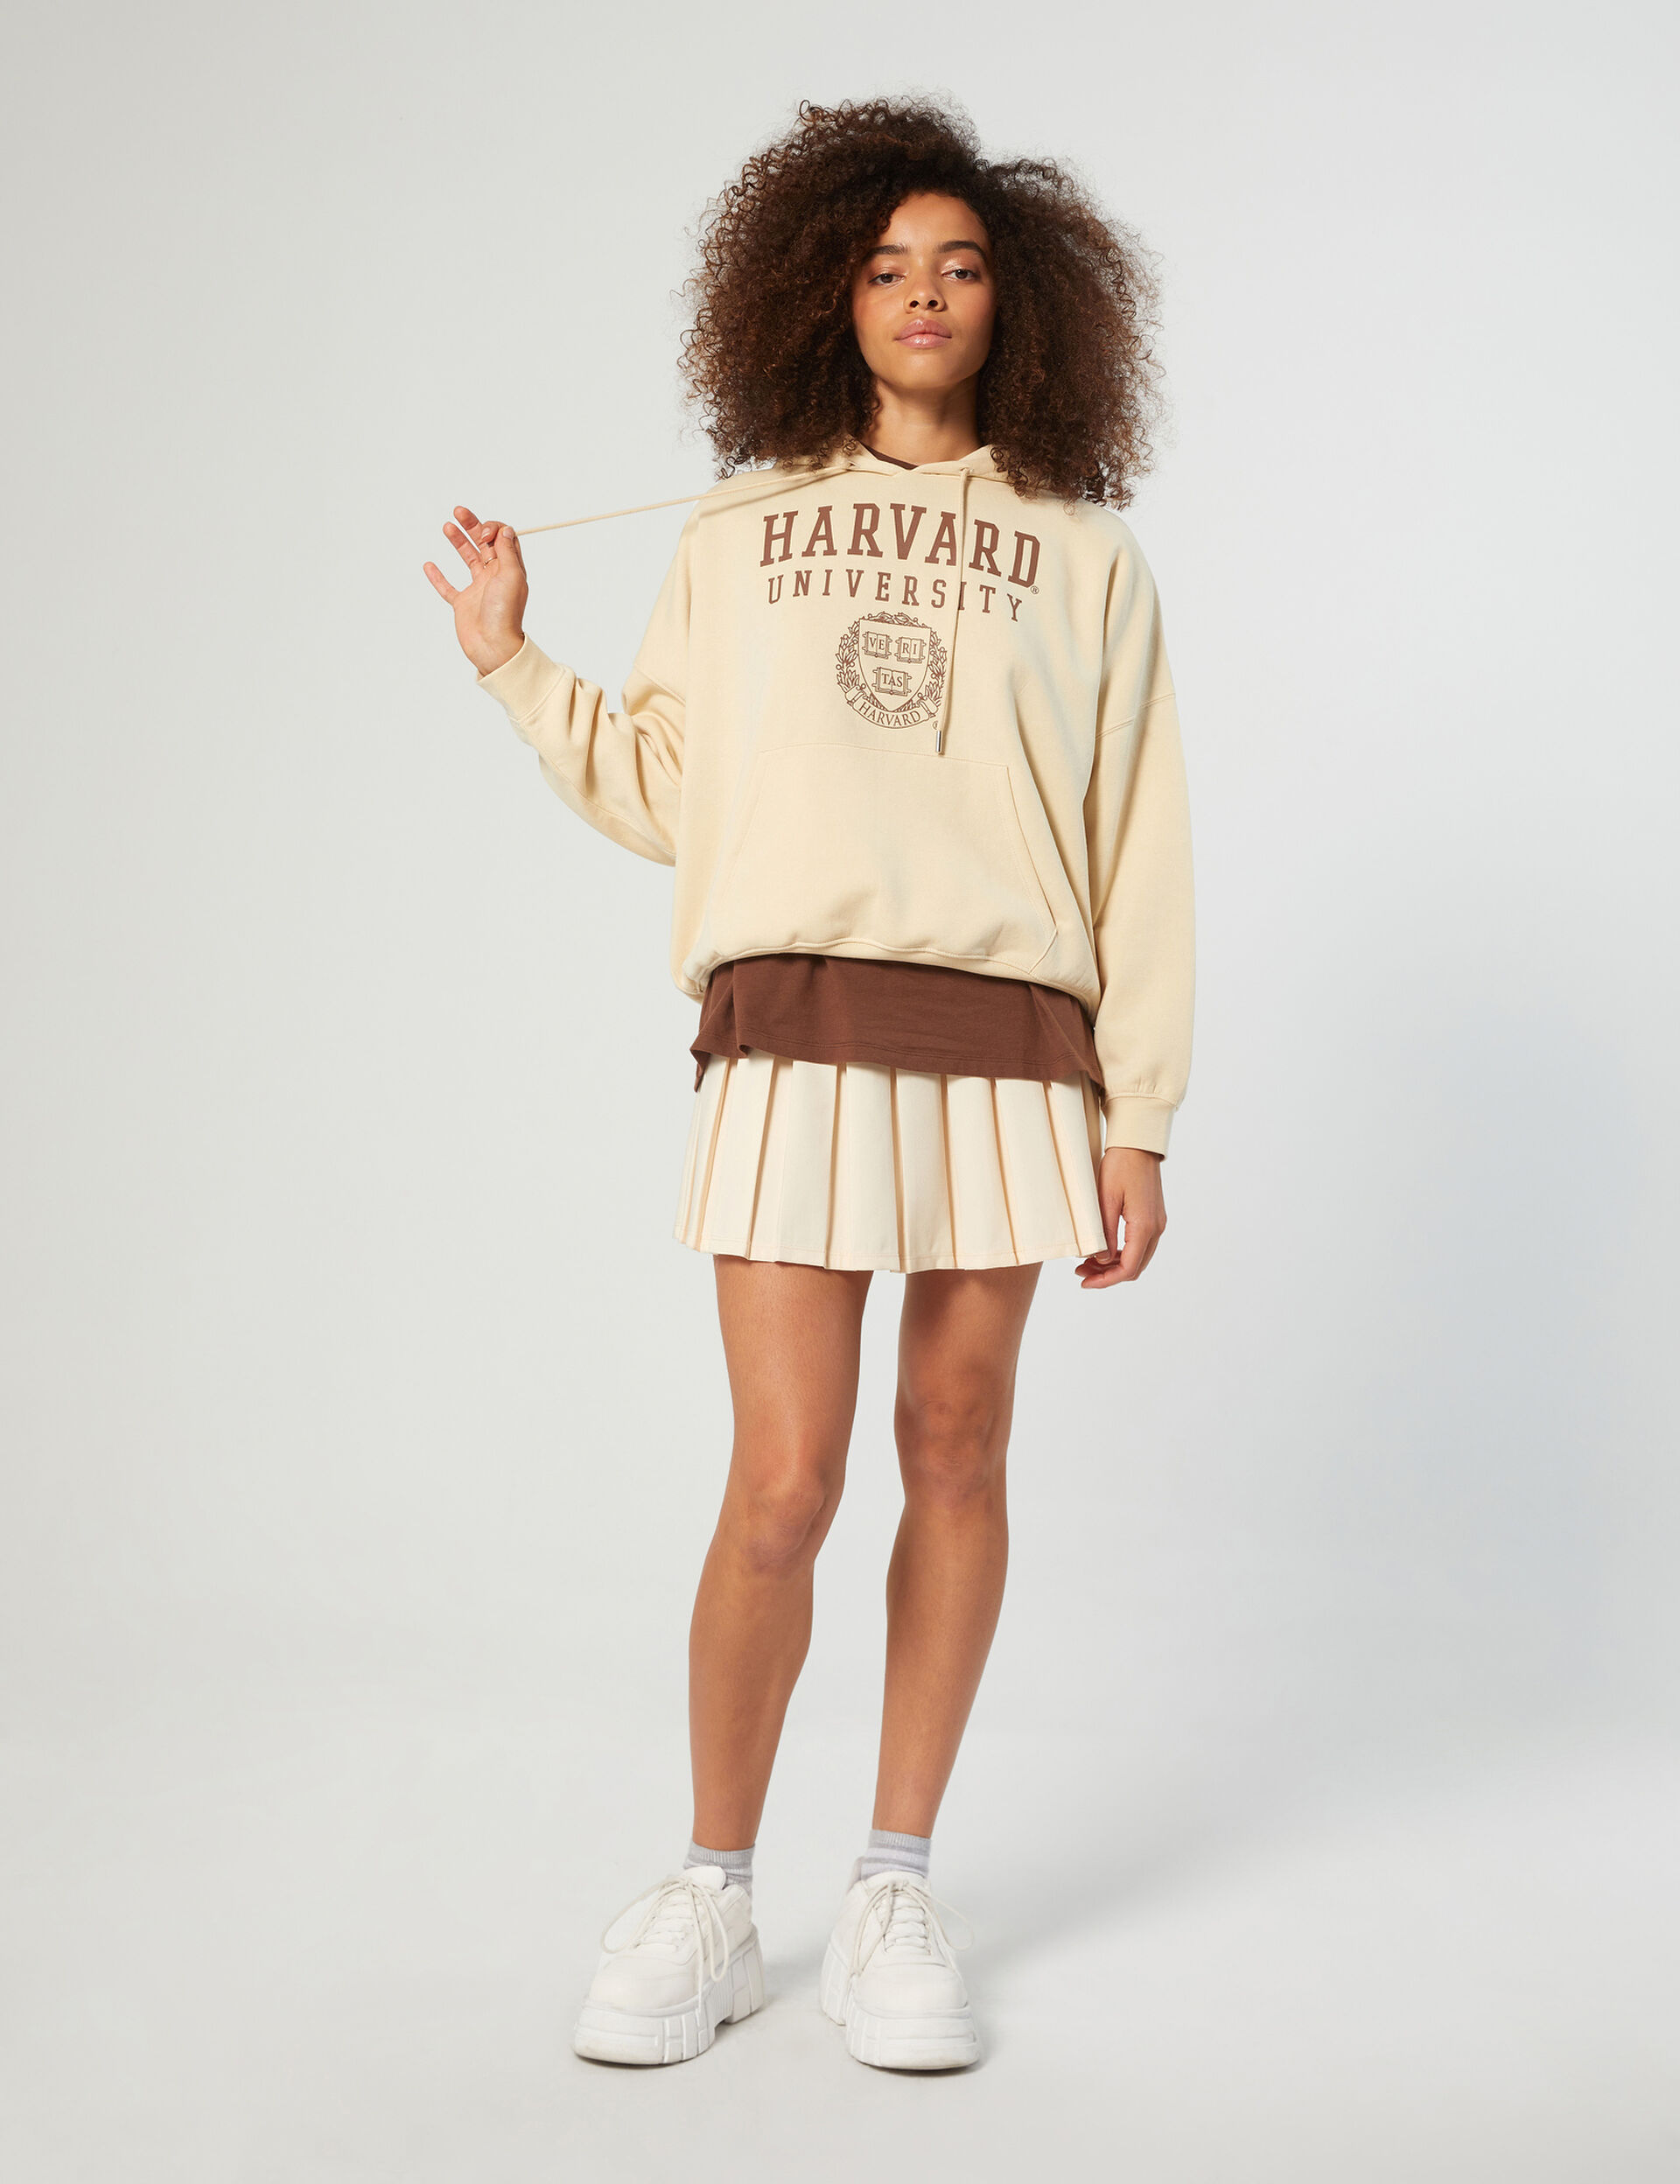 Harvard hoodie